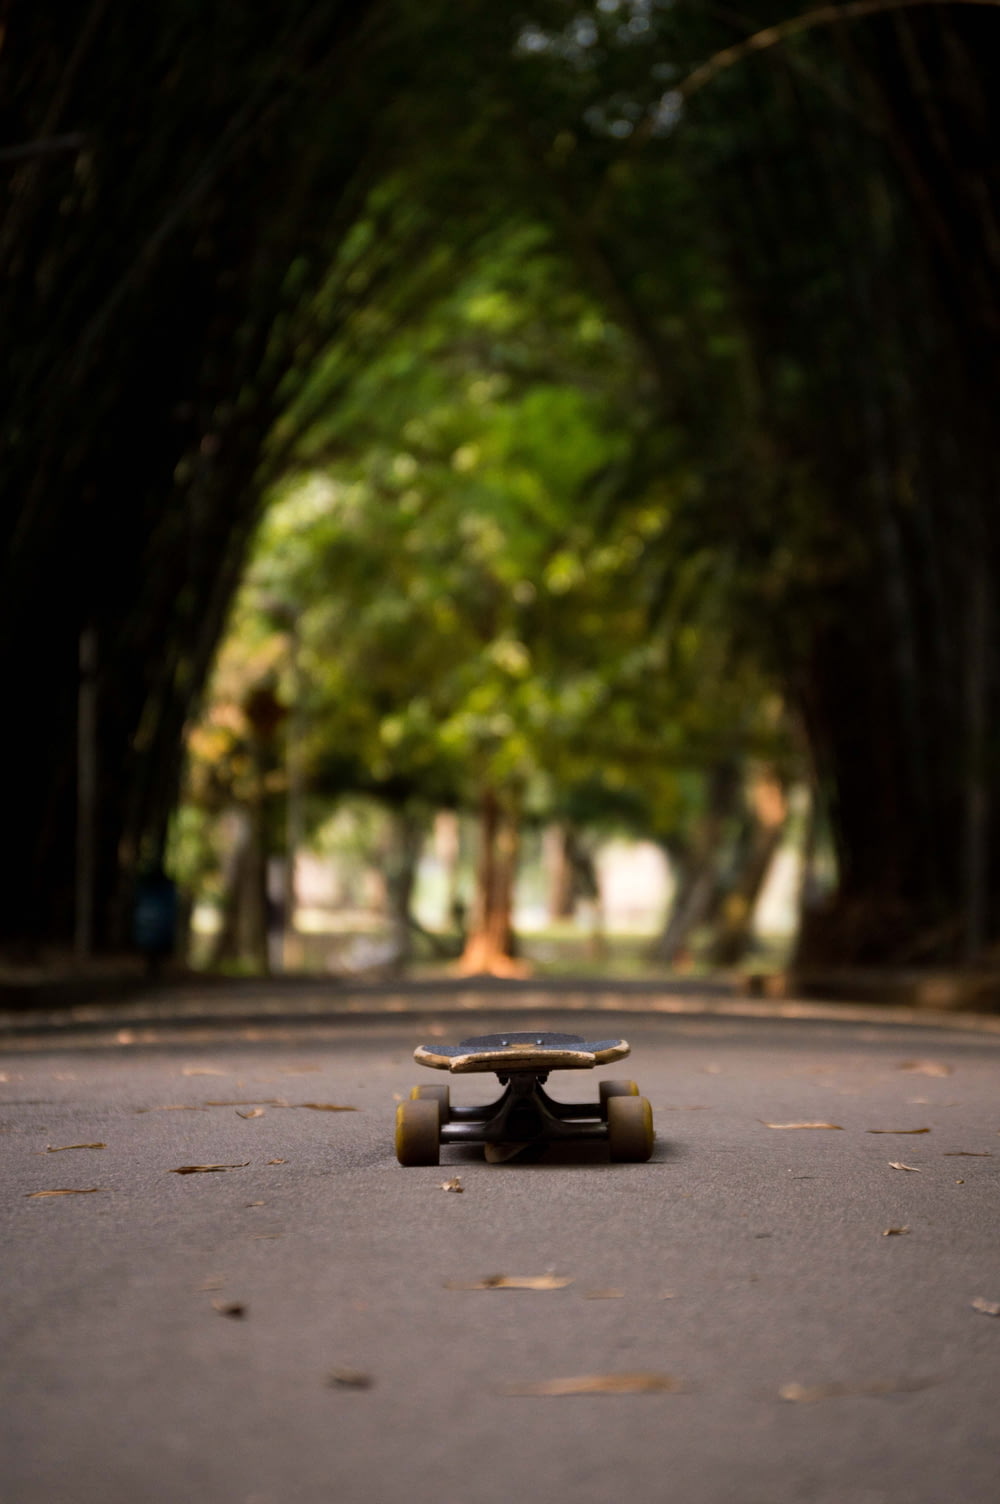 a skateboard on the street